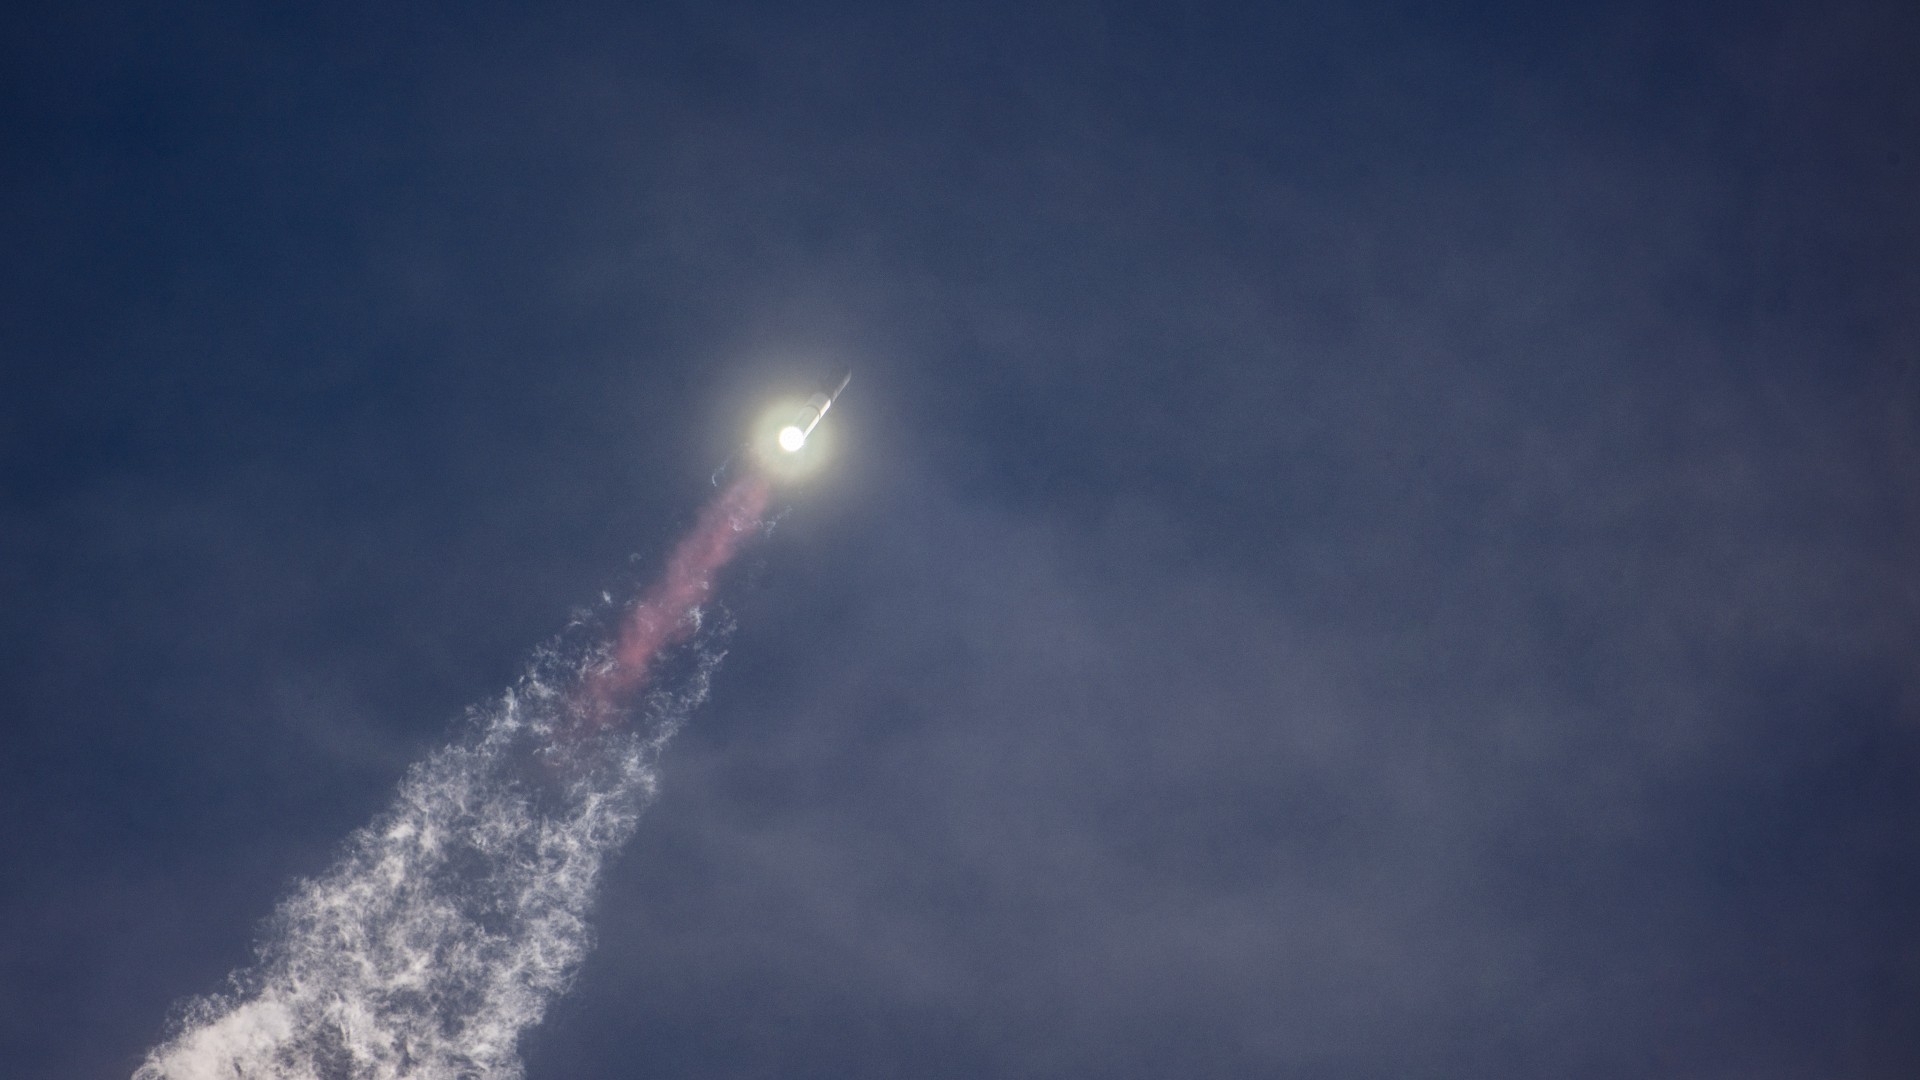 Eine große silberne Rakete fliegt über einer Flammensäule durch einen blauen Himmel